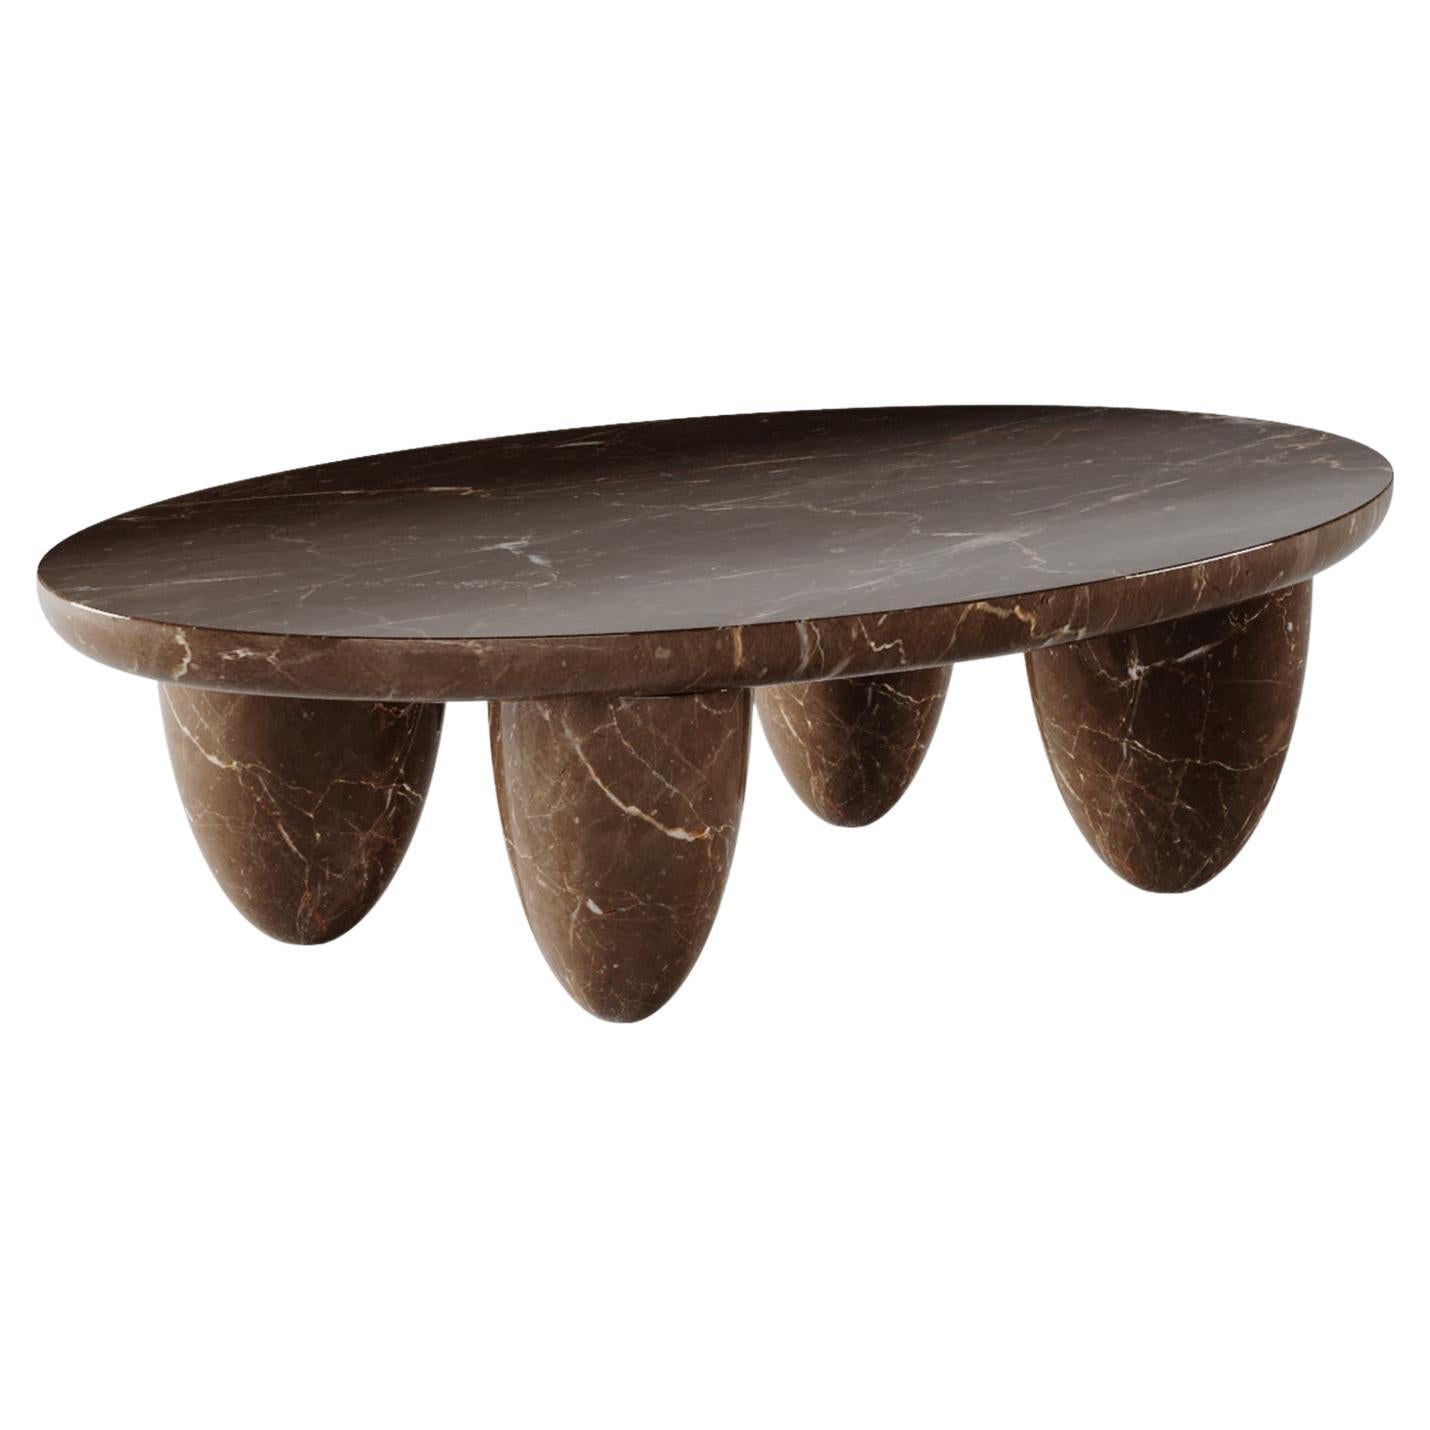 Table centrale ronde pour café, d'intérieur et d'extérieur, en marbre olive et marron.